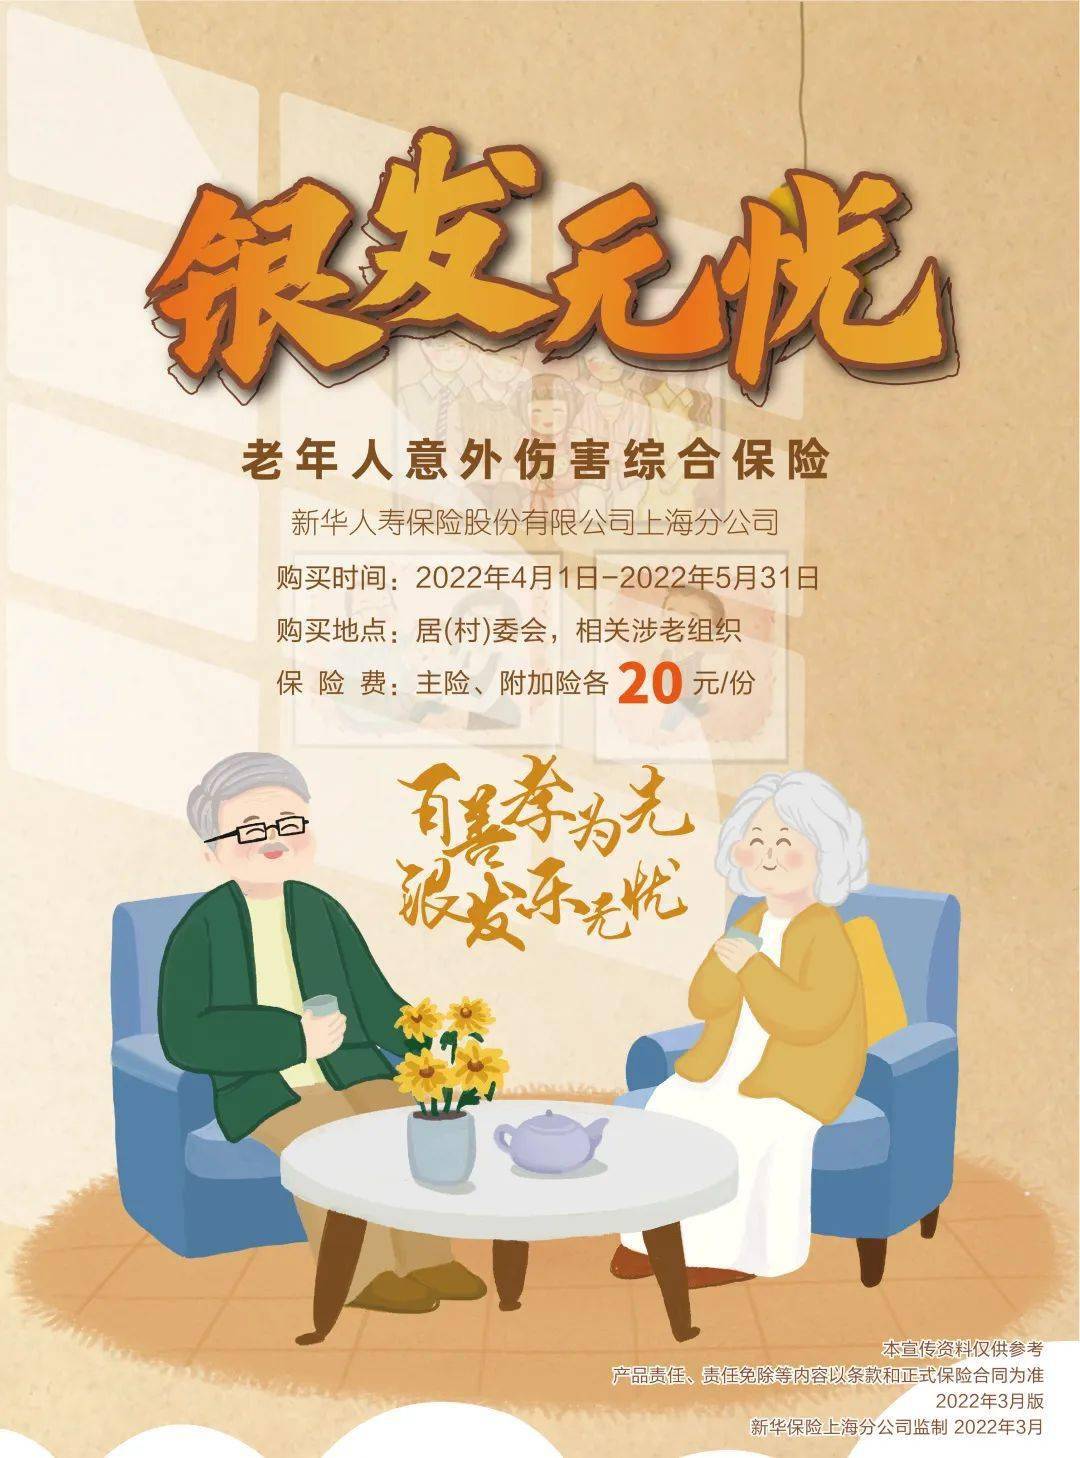 上海分公司推出银发无忧老年人意外伤害保险项目,该项目是上海民政及